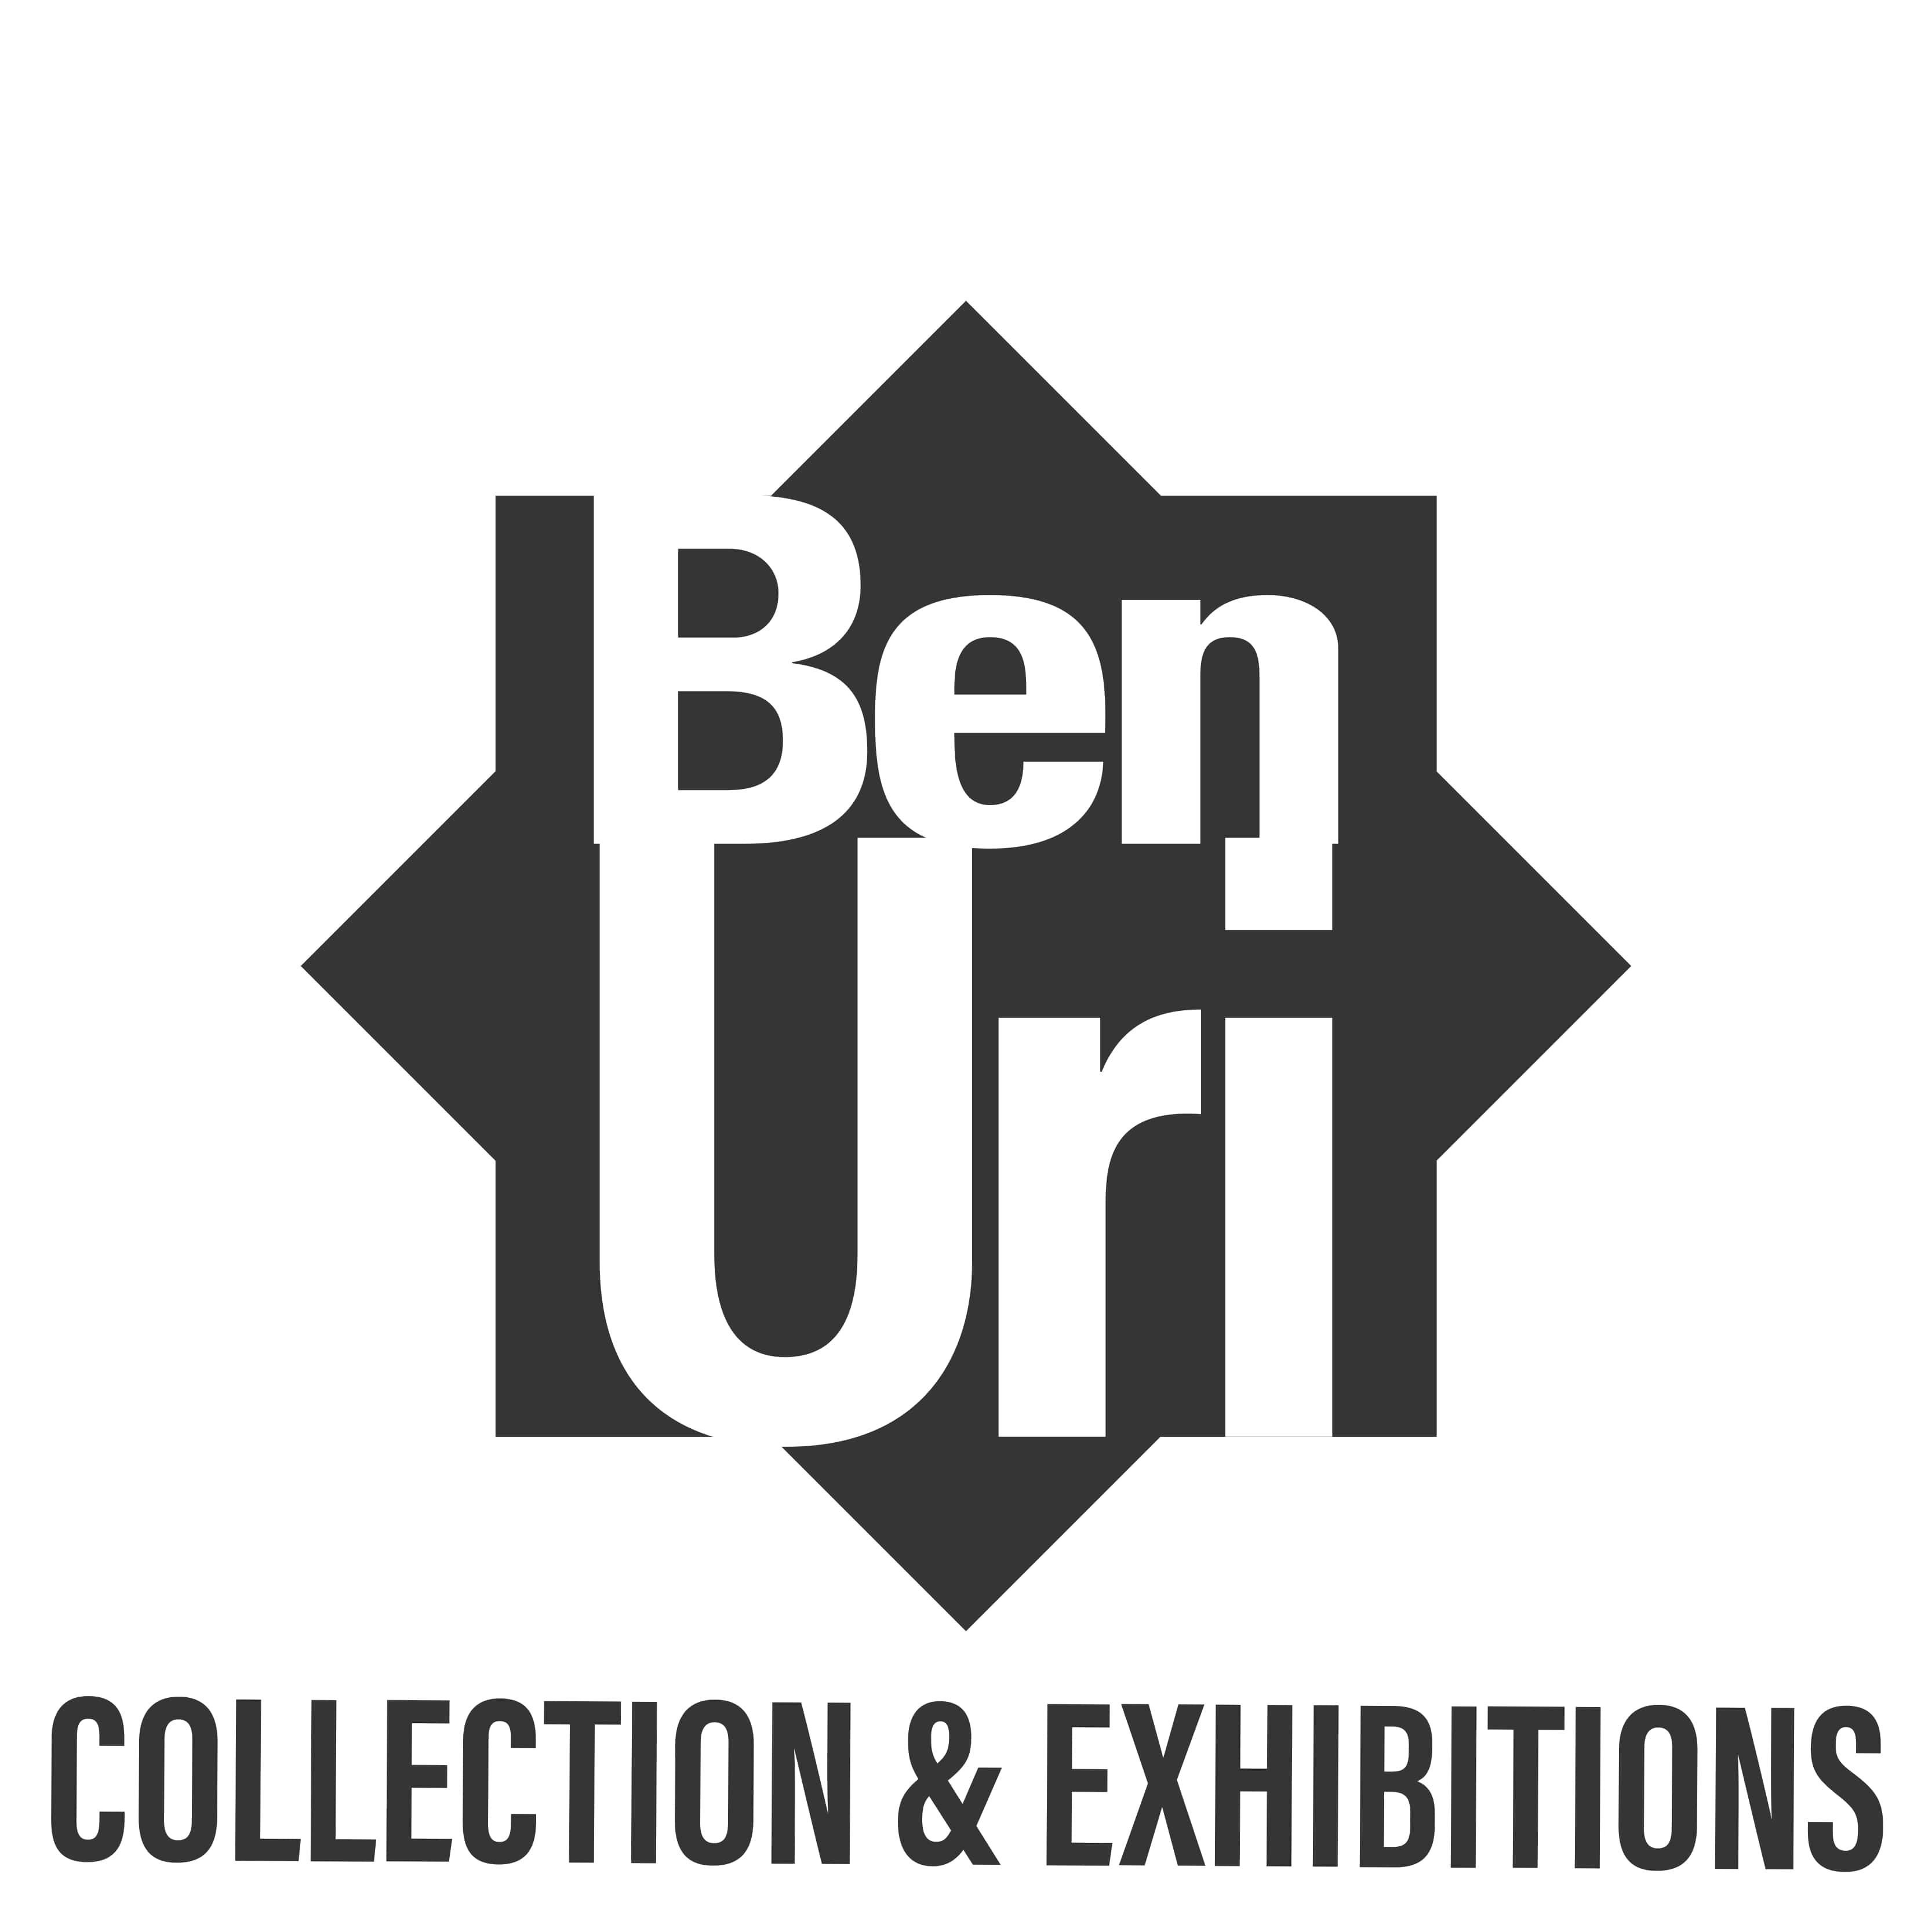 Ben Uri Gallery & Museum